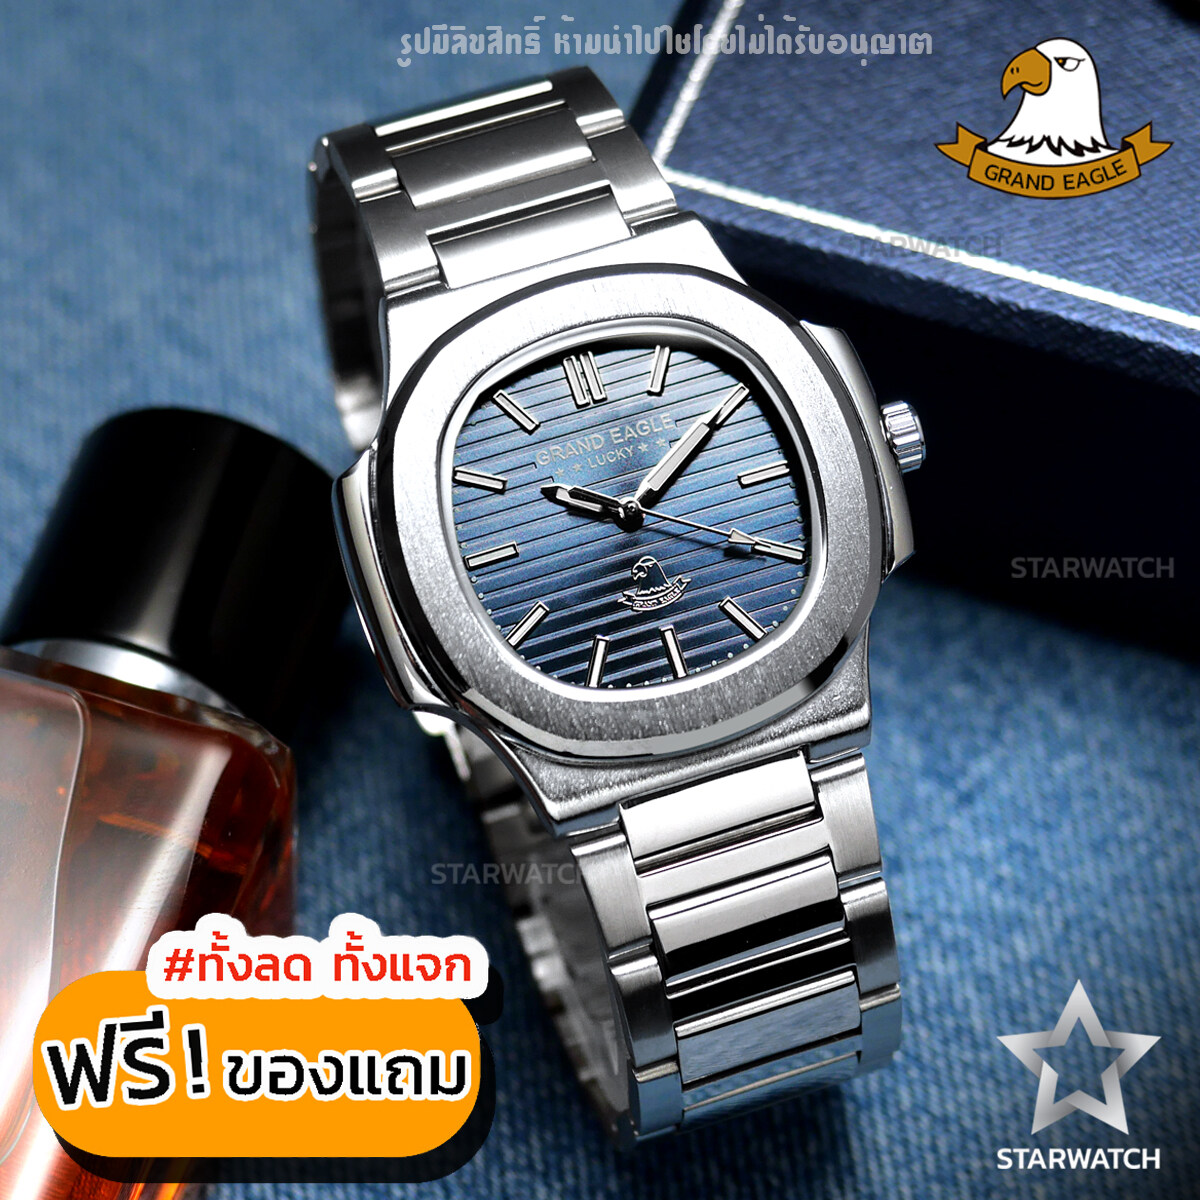 โปรโมชั่น Flash Sale : GRAND EAGLE นาฬิกาข้อมือผู้ชาย สายสแตนเลส รุ่น GE8014Gเงา – SILVER/NAVY